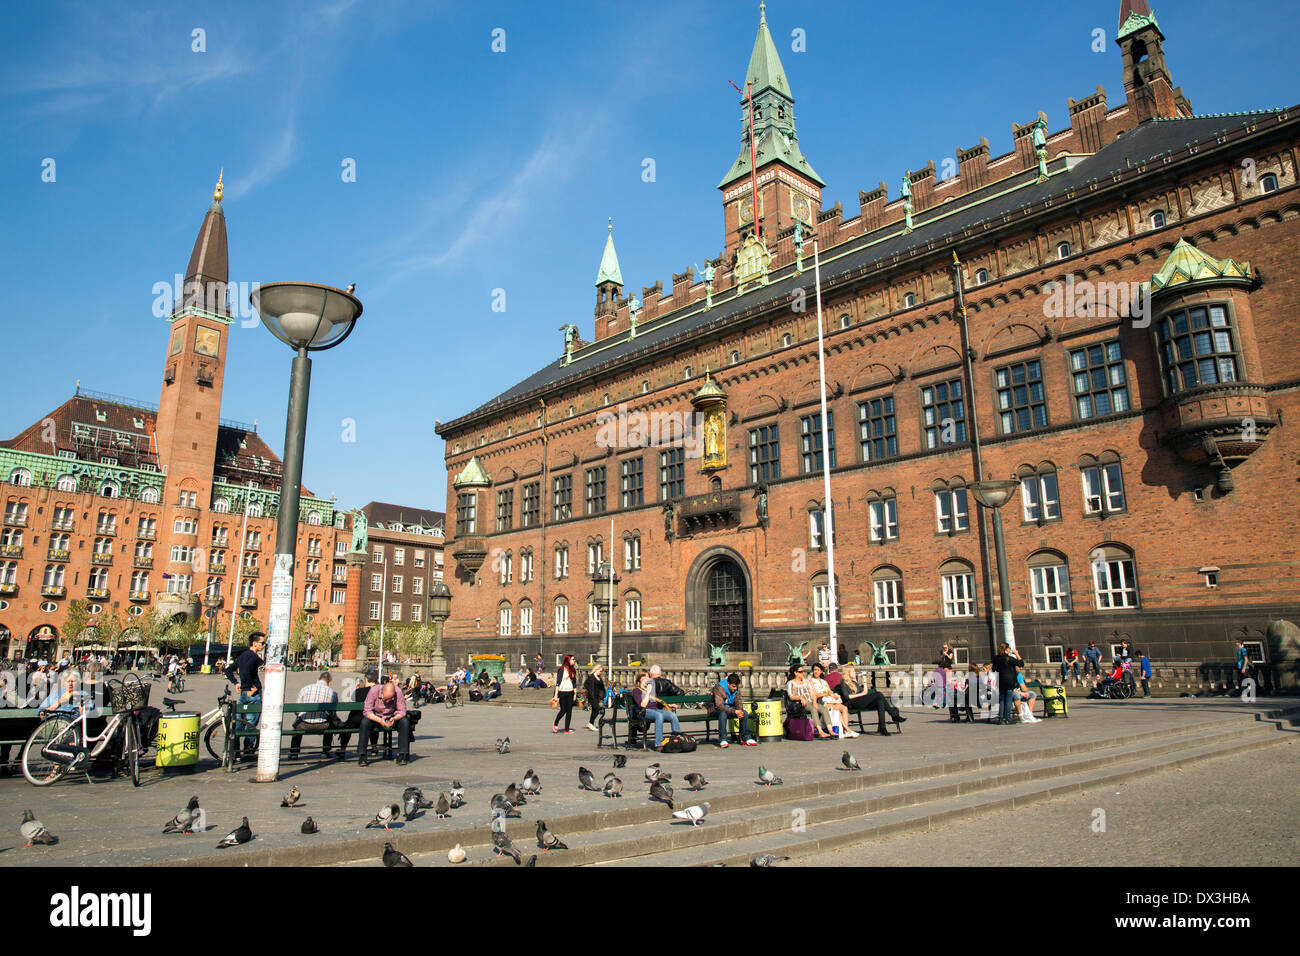 Radhuspladsen es una gran plaza pública en el centro de Copenhagen Foto de stock